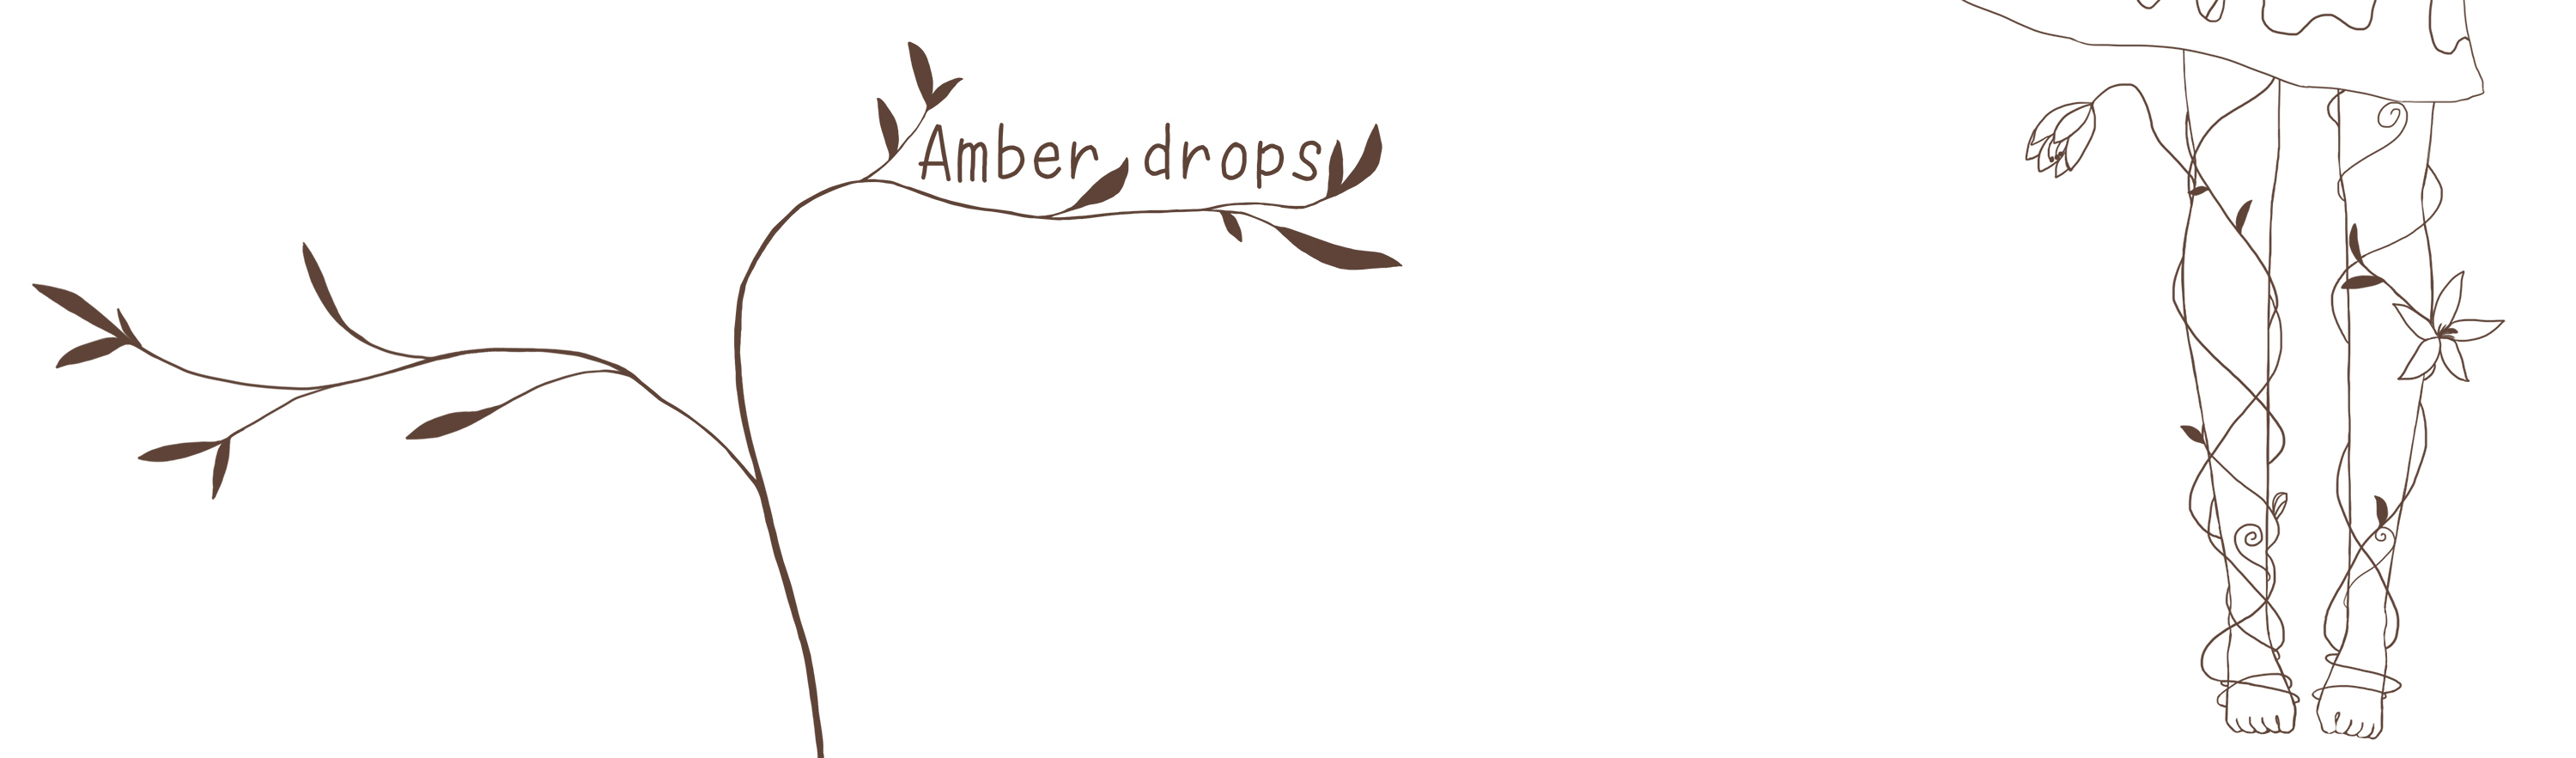 Amber drops